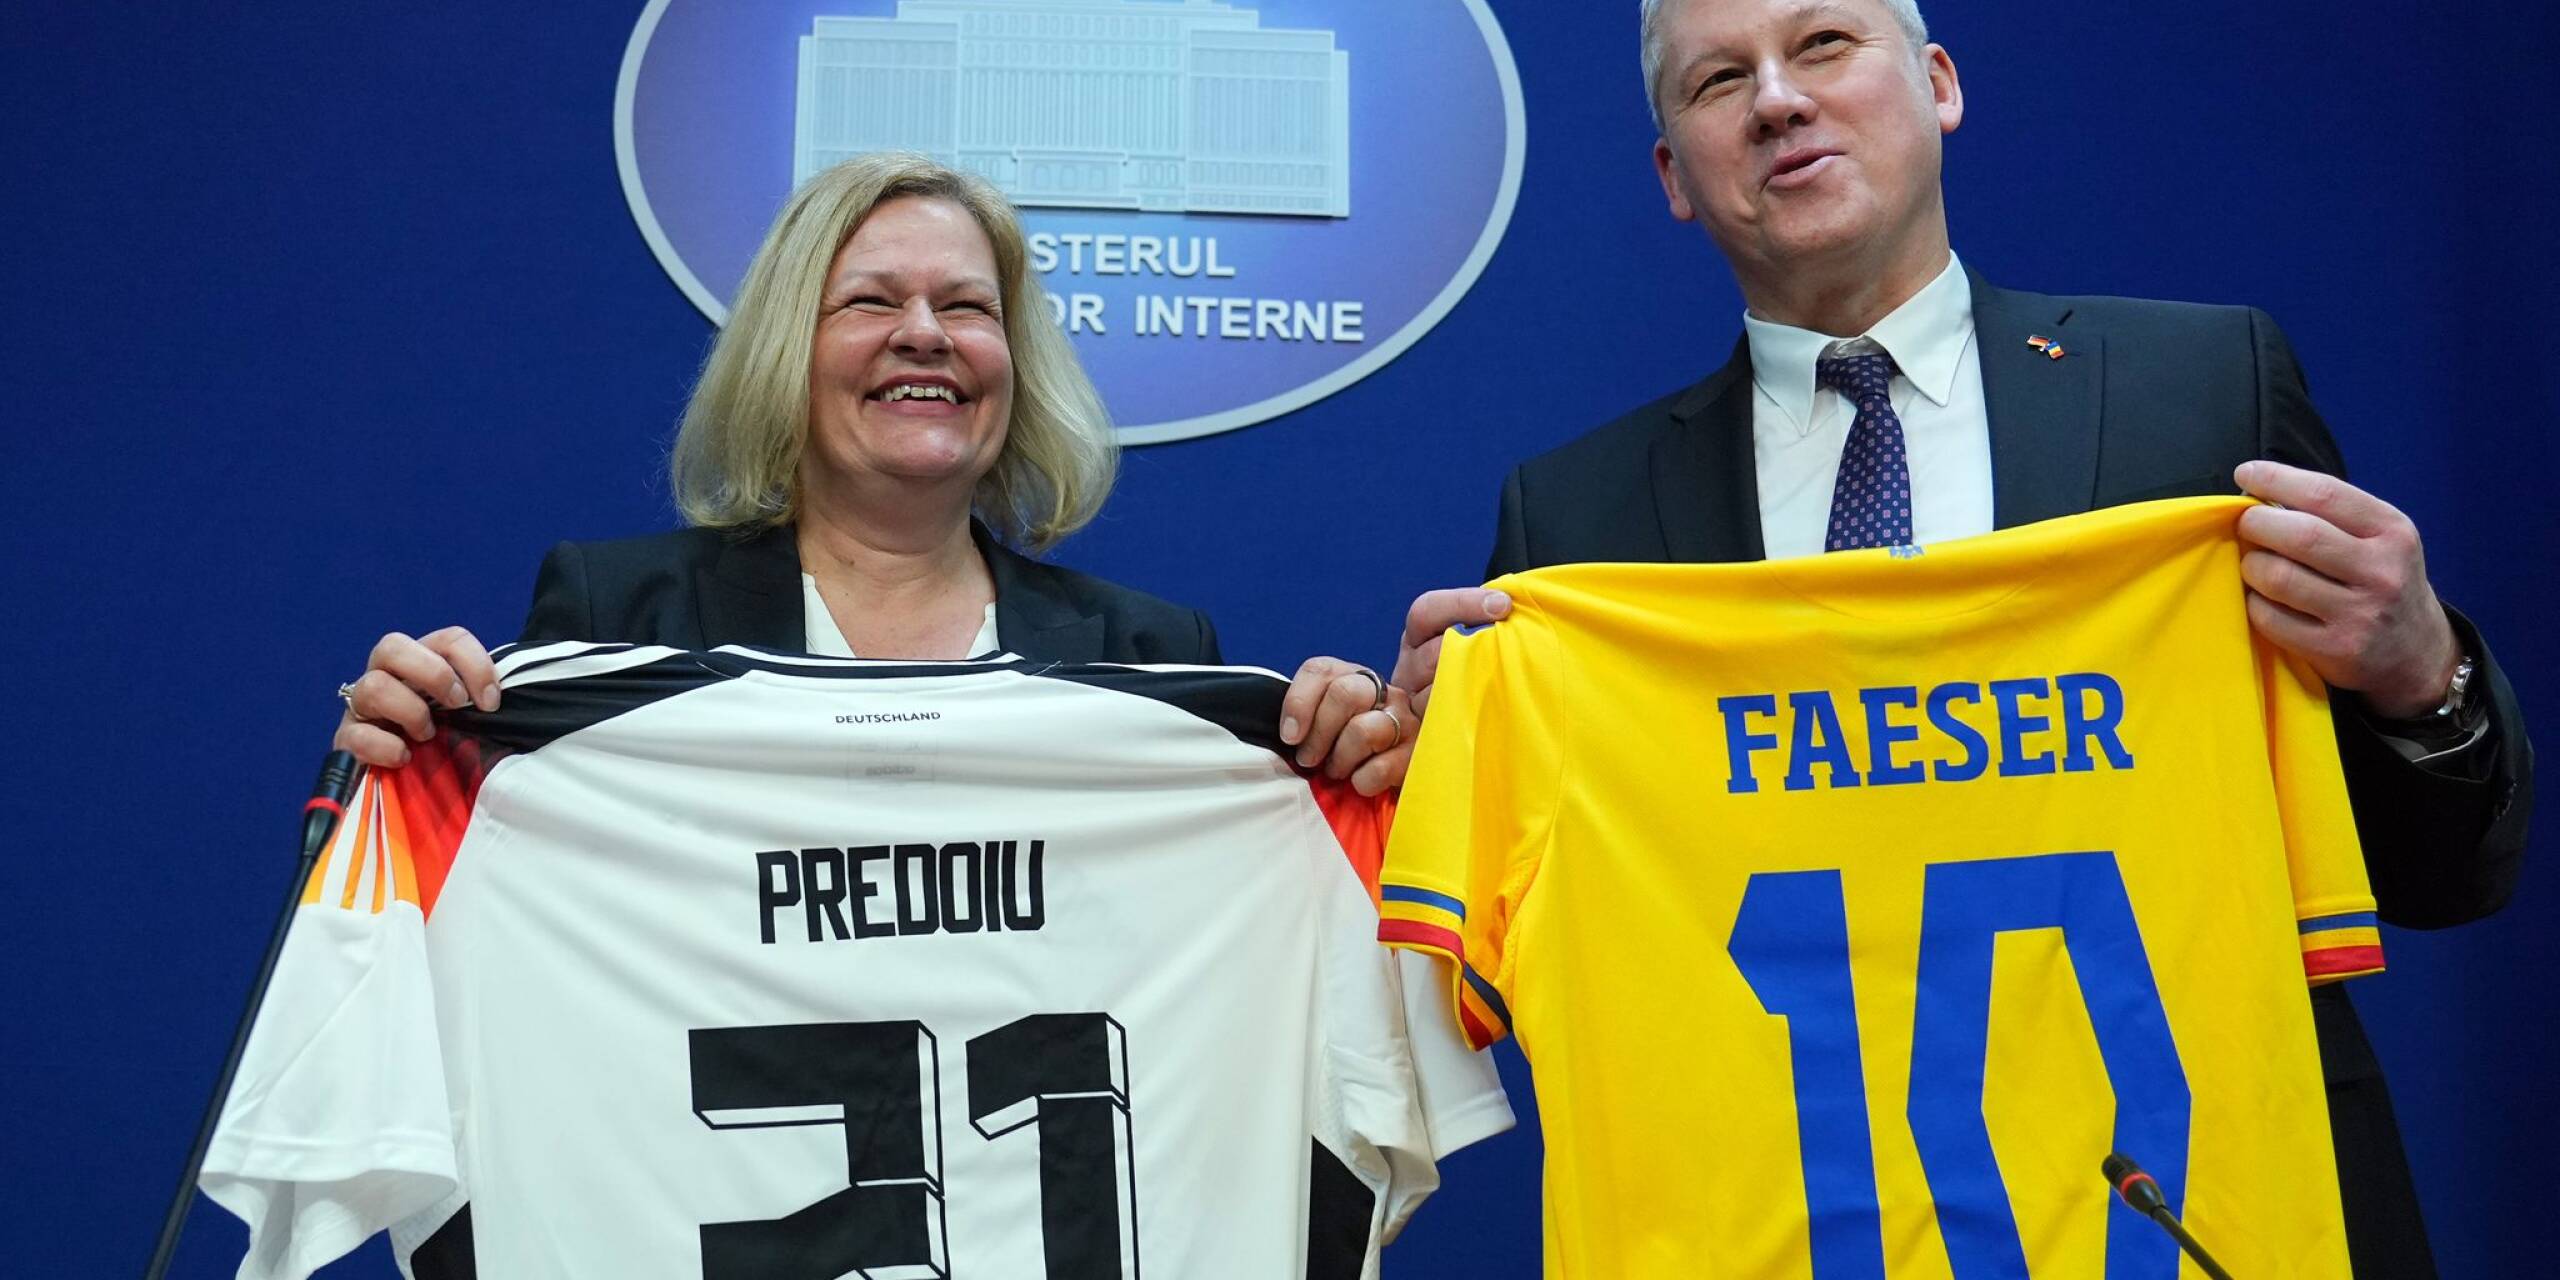 Bundesinnenministerin Nancy Faeser und ihr rumänischer Amtskollege Marian Catalin Predoiu halten nach einer gemeinsamen Pressekonferenz Trikots der jeweiligen Fussball-Nationalmannschaft in den Händen.